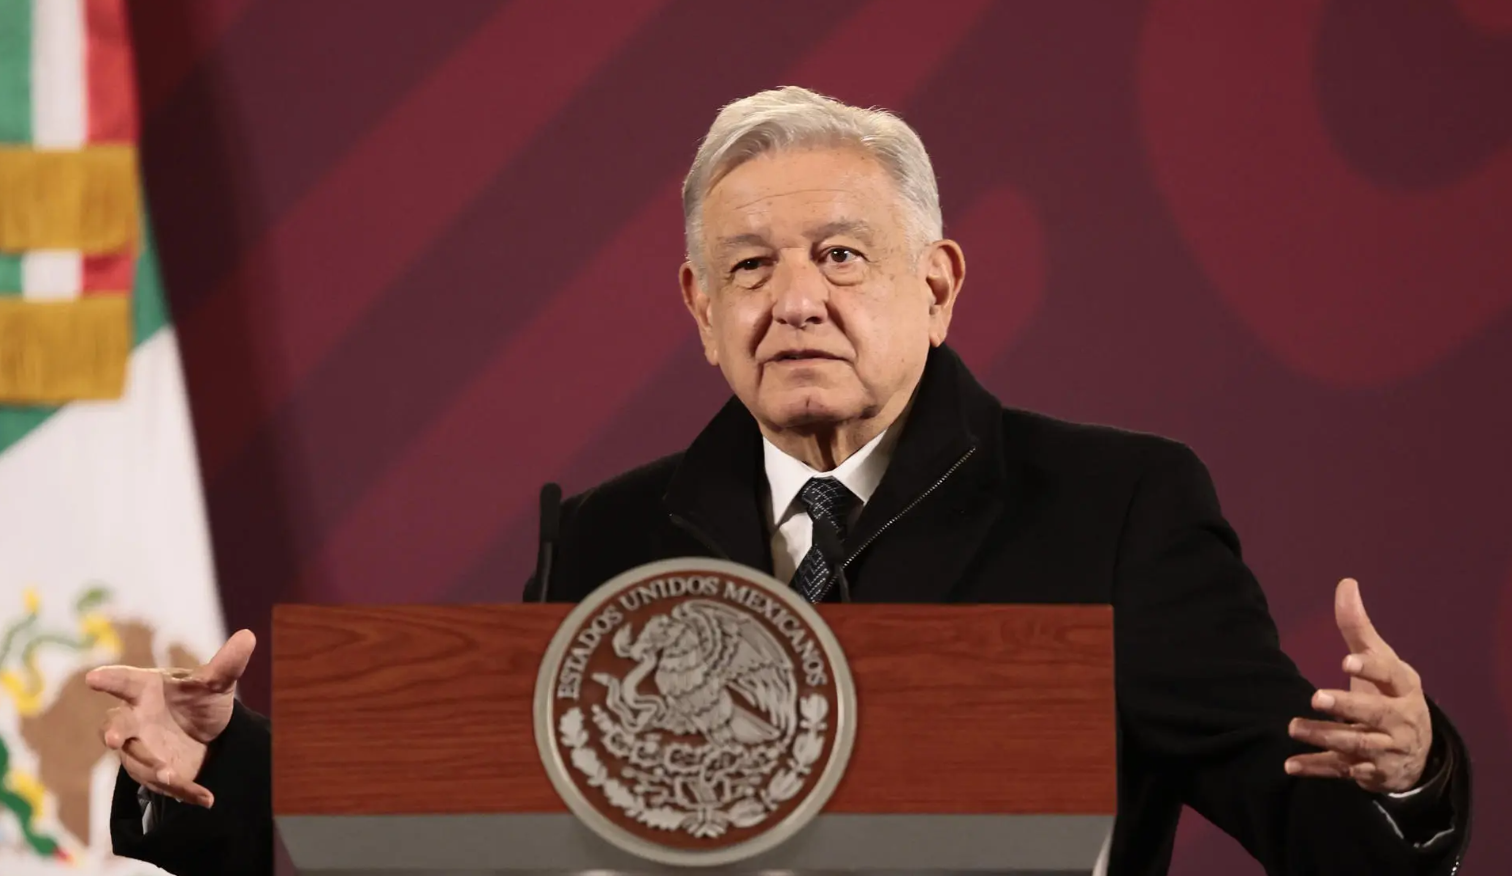 Desaparecerán a los organismos autónomos que se crearon “para legalizar la corrupción”: López Obrador